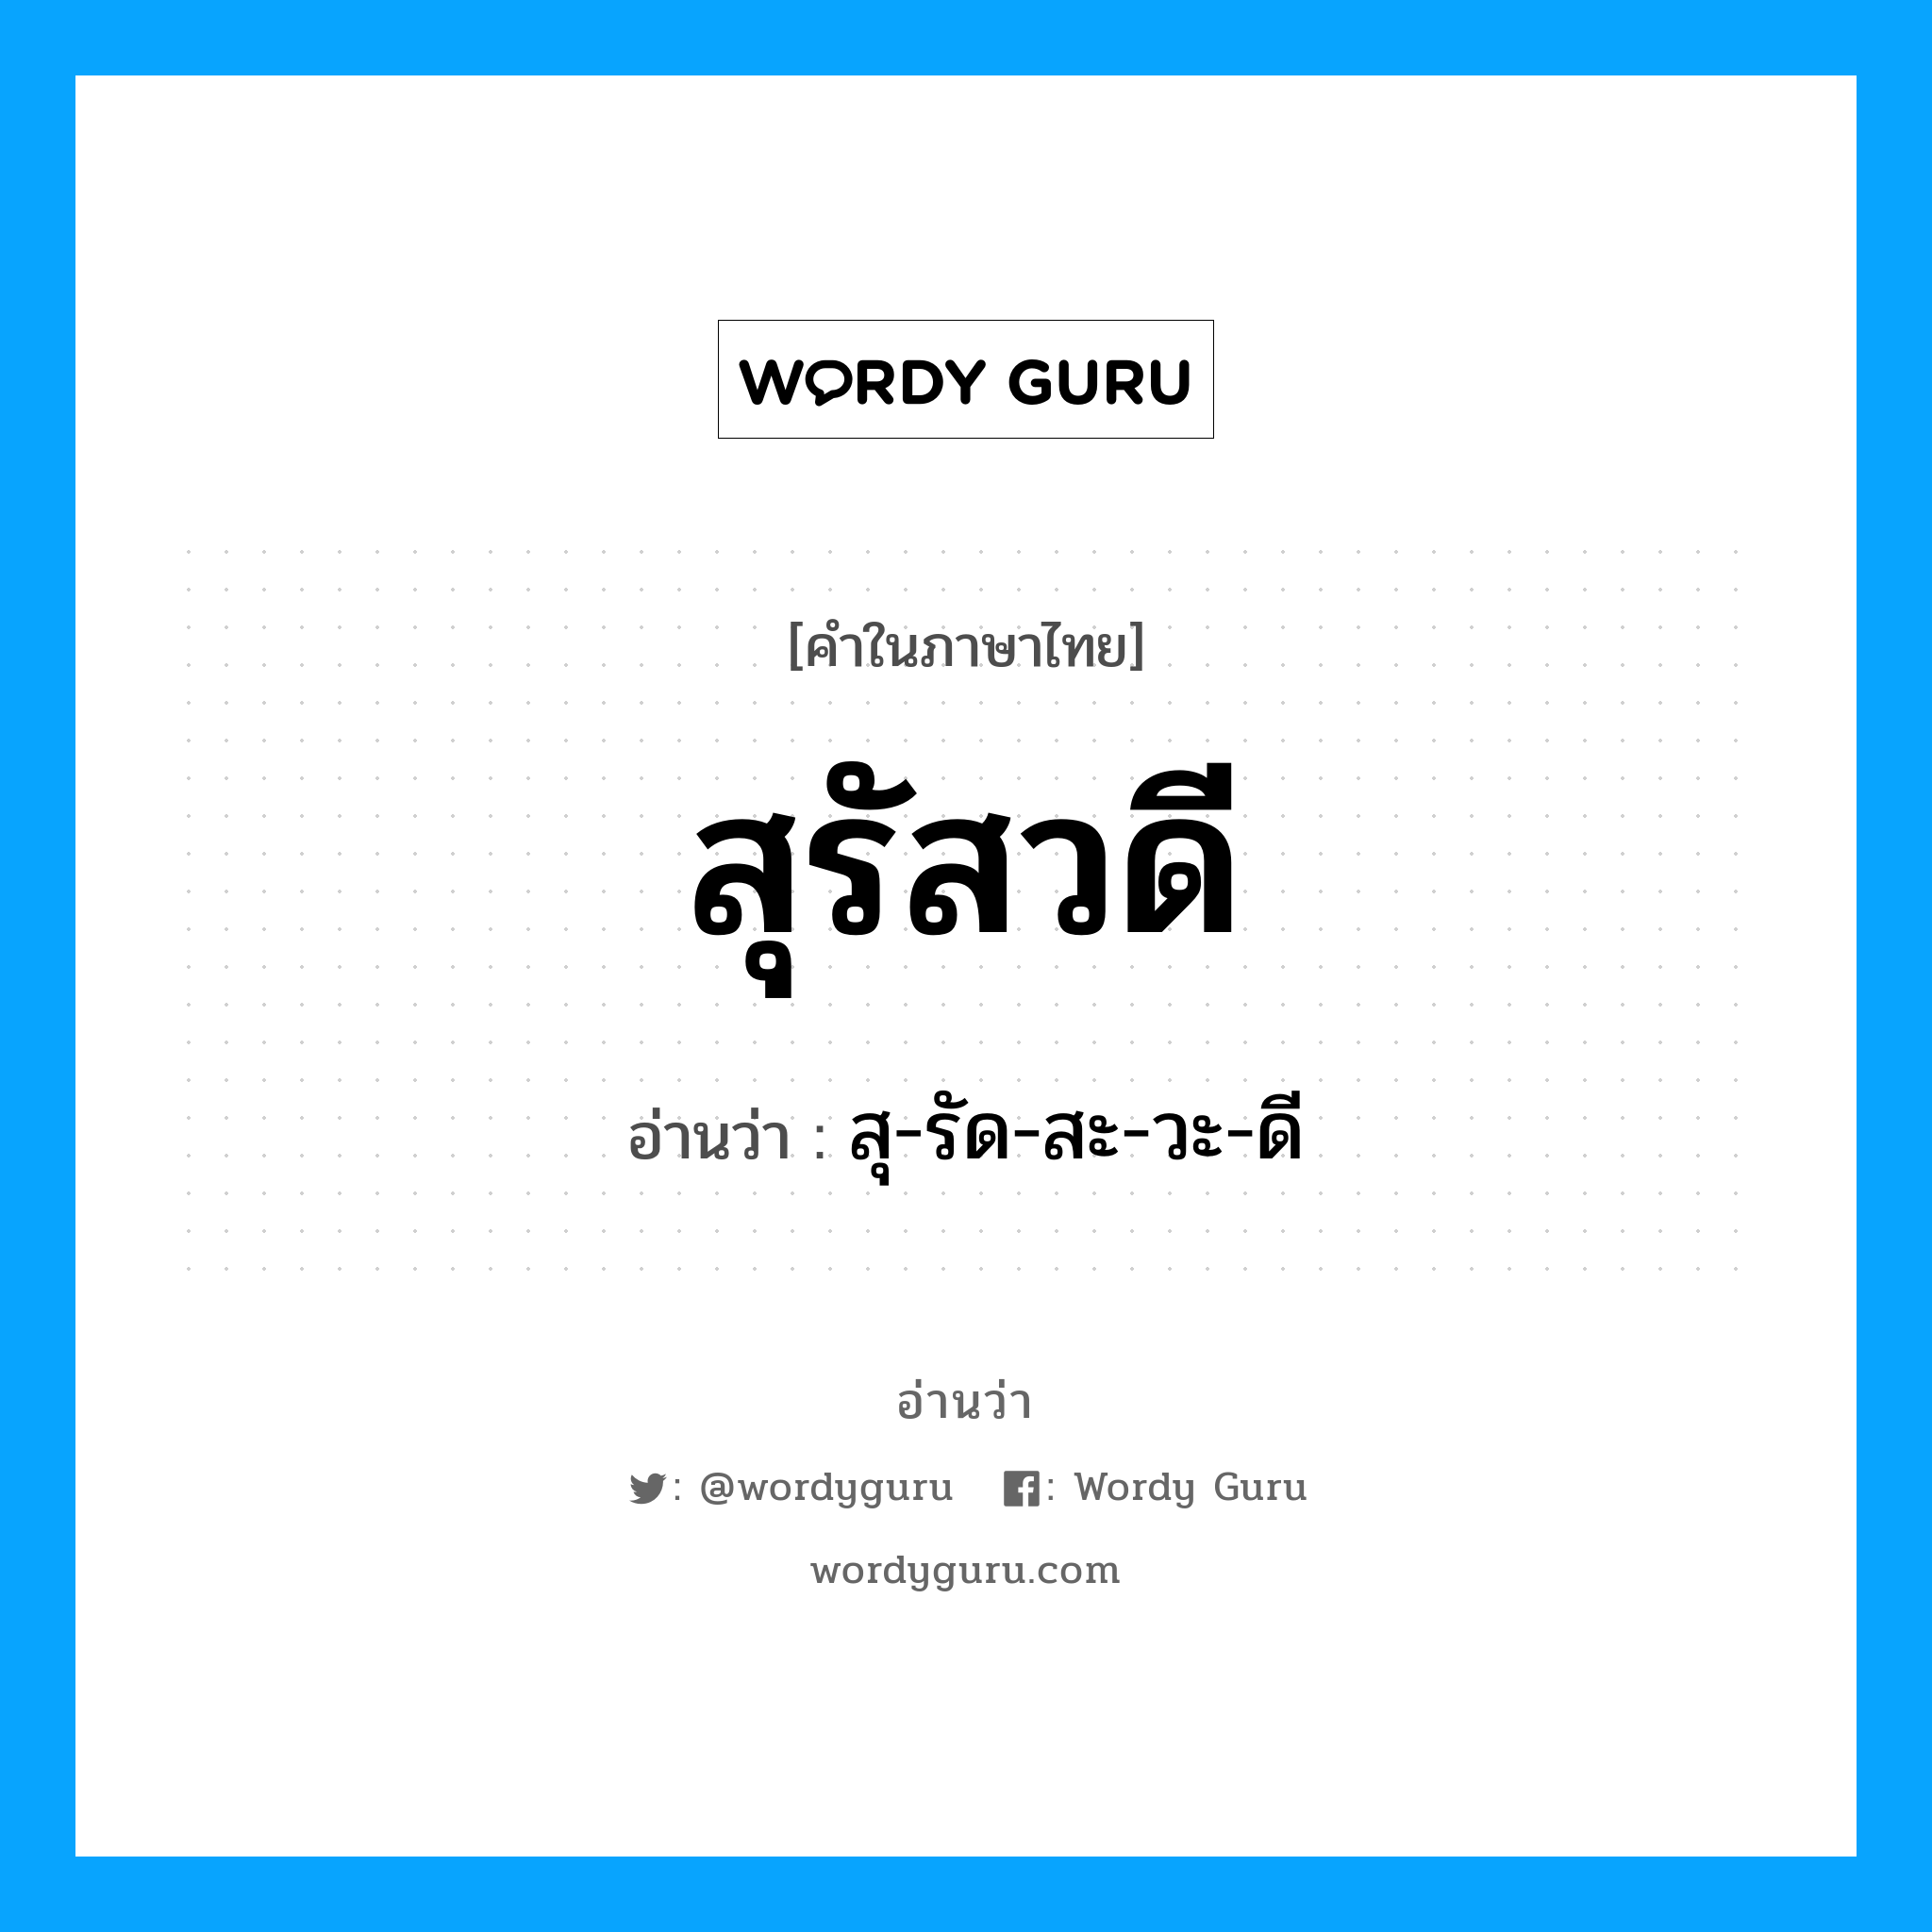 สุ-รัด-สะ-วะ-ดี เป็นคำอ่านของคำไหน?, คำในภาษาไทย สุ-รัด-สะ-วะ-ดี อ่านว่า สุรัสวดี